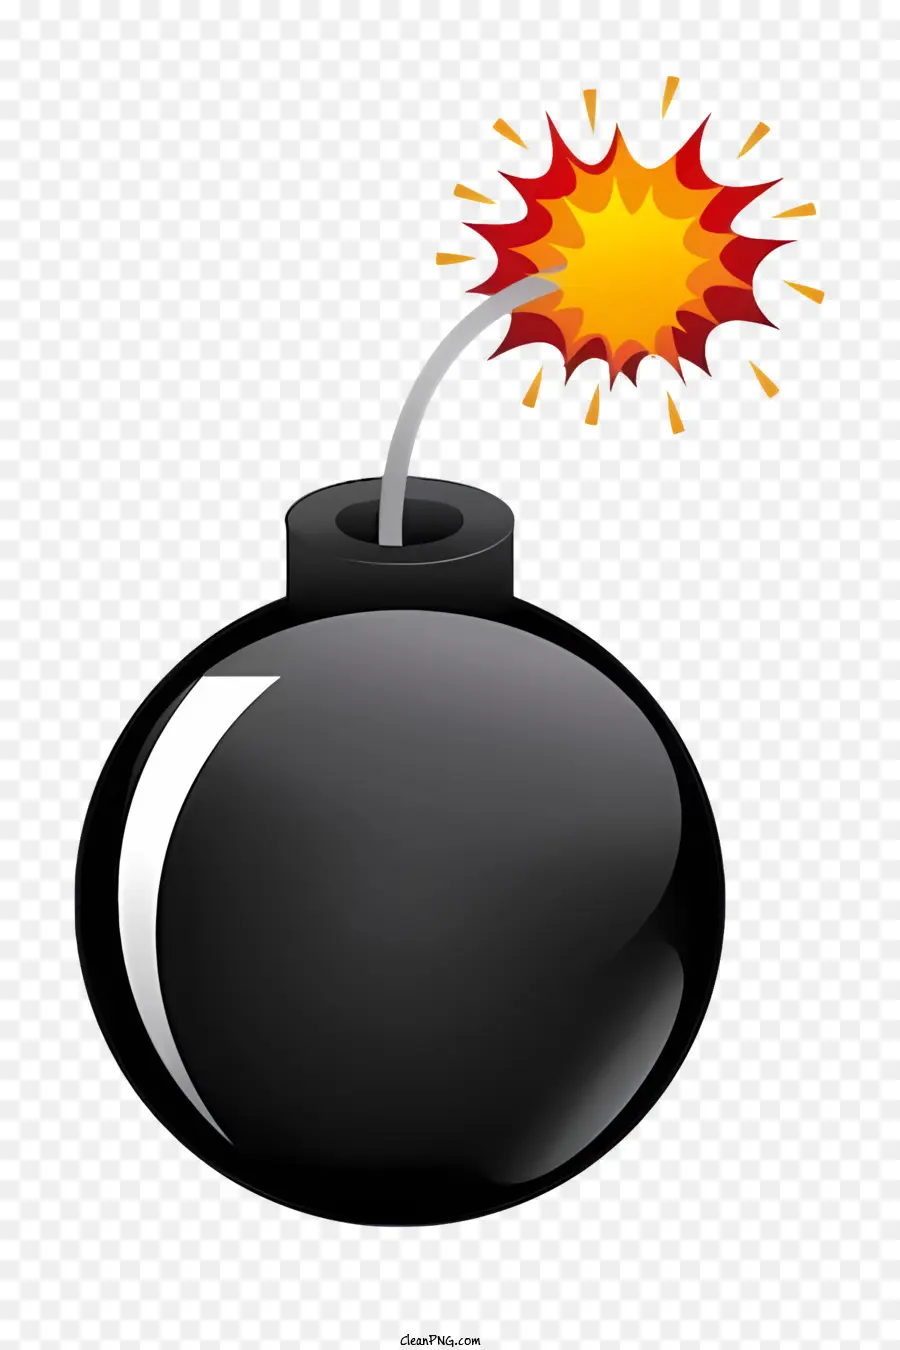 Explosive Gefahr von Timer Bomb Bomb Flare - Schwarze Bombe mit rotem Fackel auf schwarzem Hintergrund